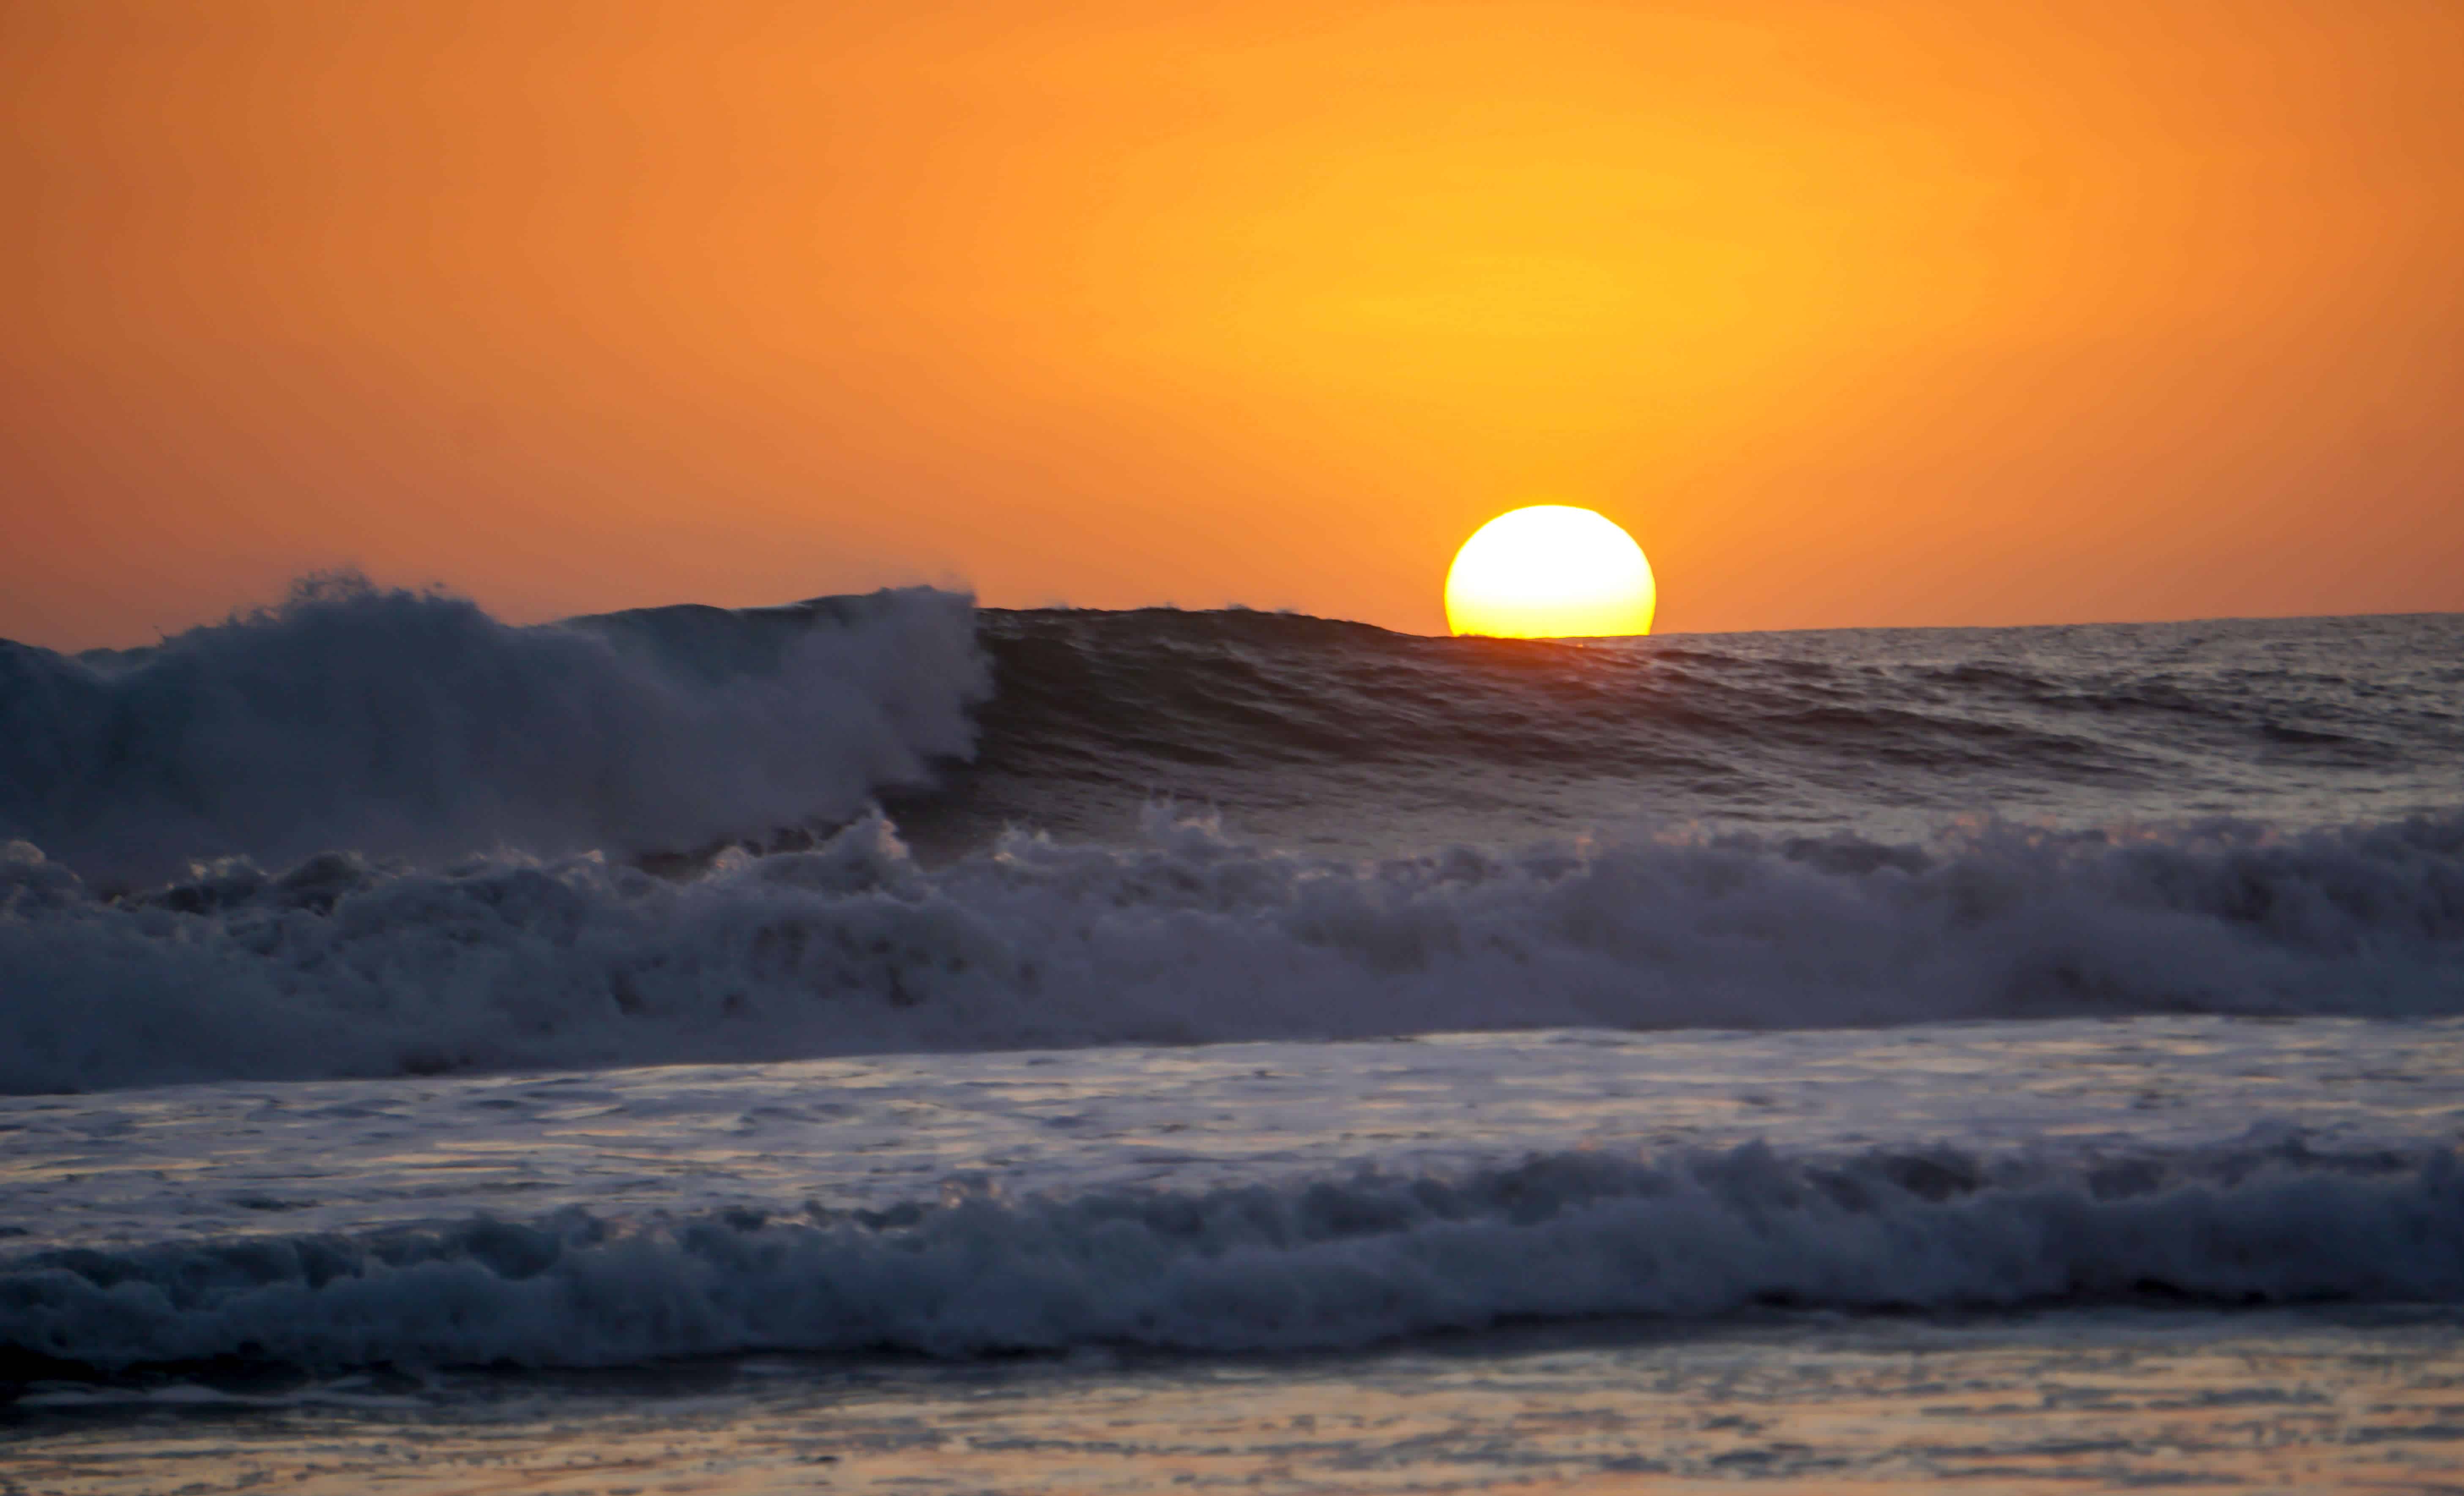 Sunset over the waves in Santa Teresa